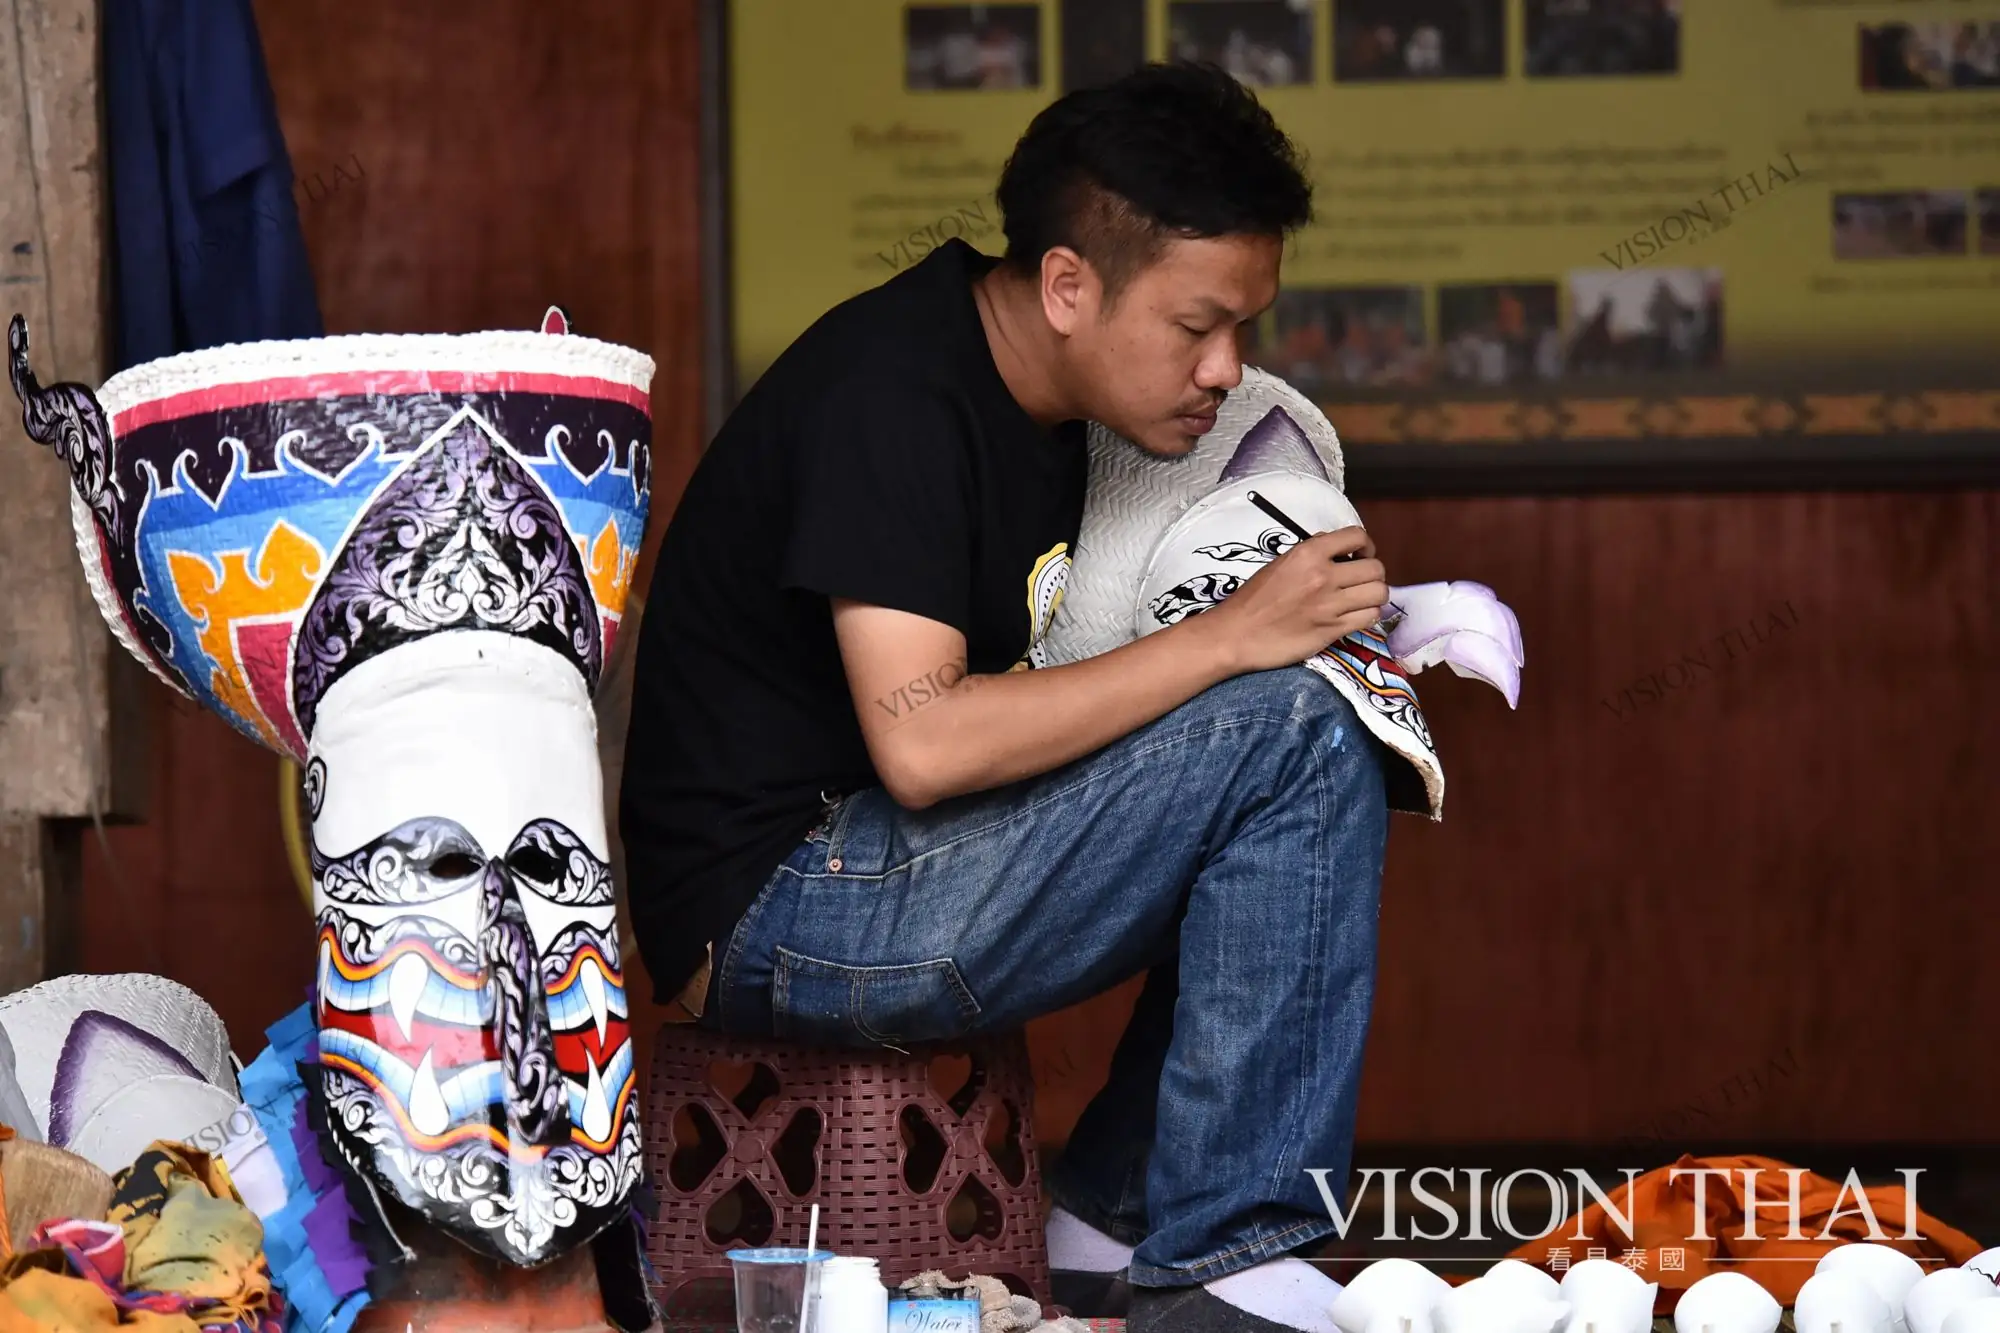 皮塔空面具節受泰國政府「一村一品」影響從宗教儀式轉為節慶活動